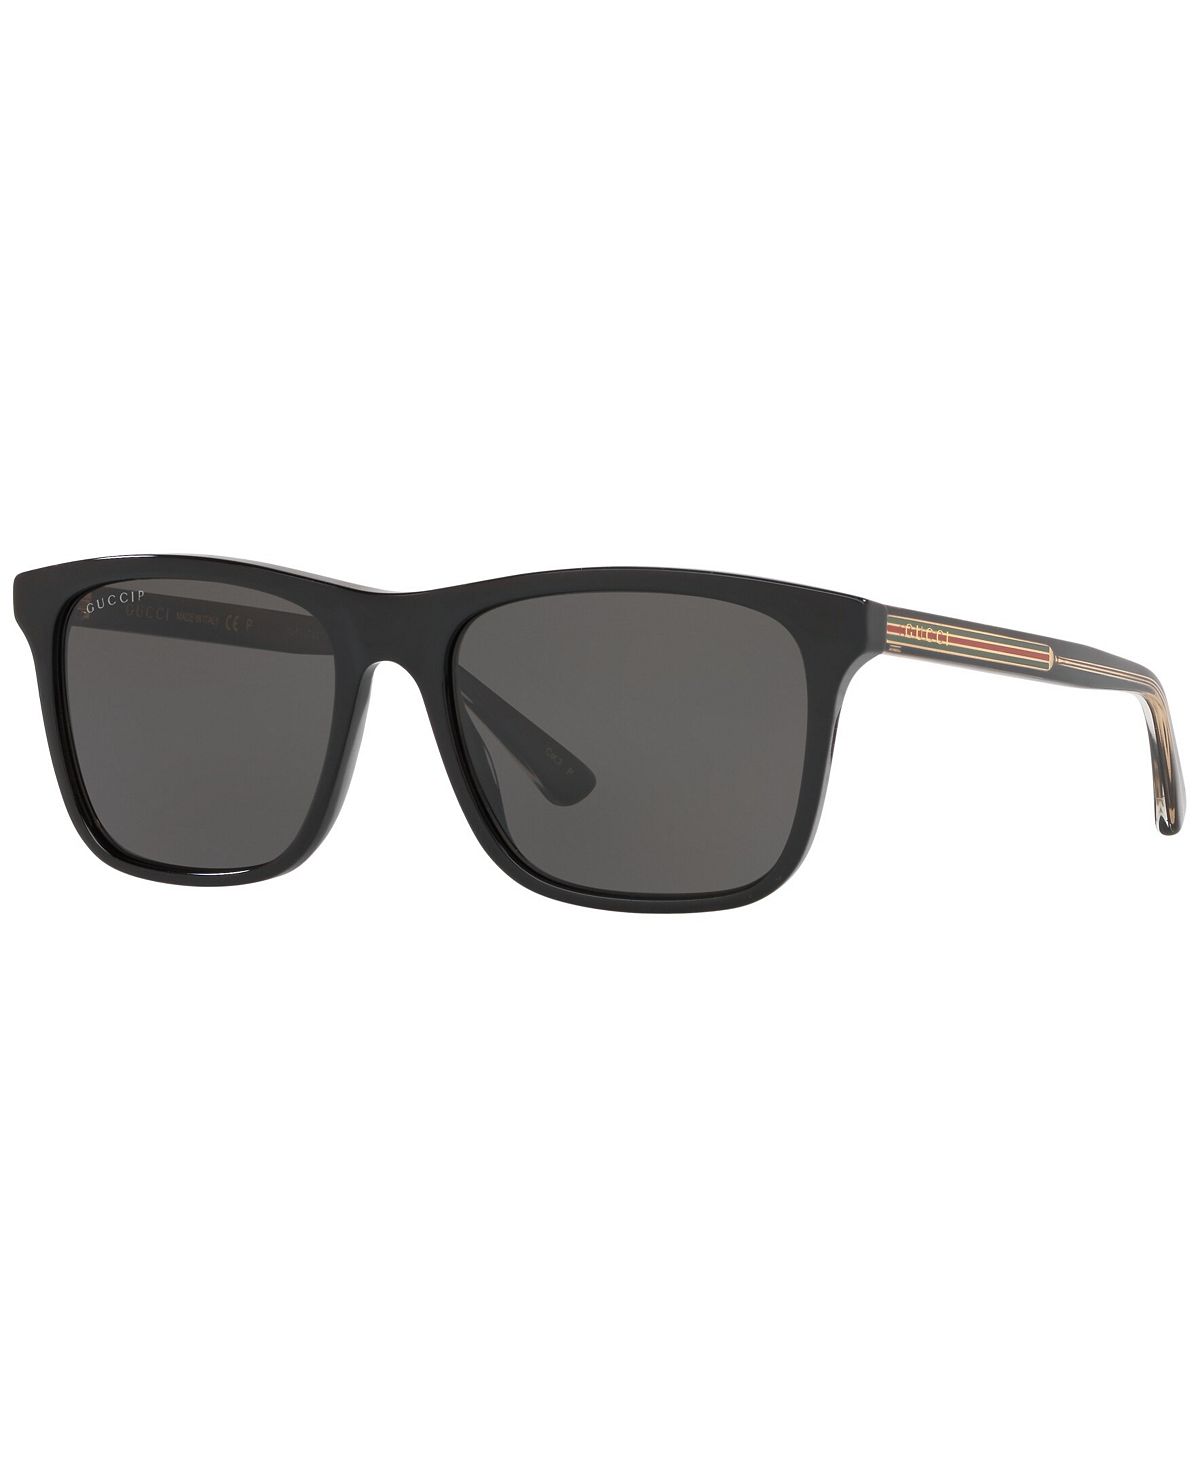 Мужские поляризованные солнцезащитные очки, GG0381SN Gucci 56793